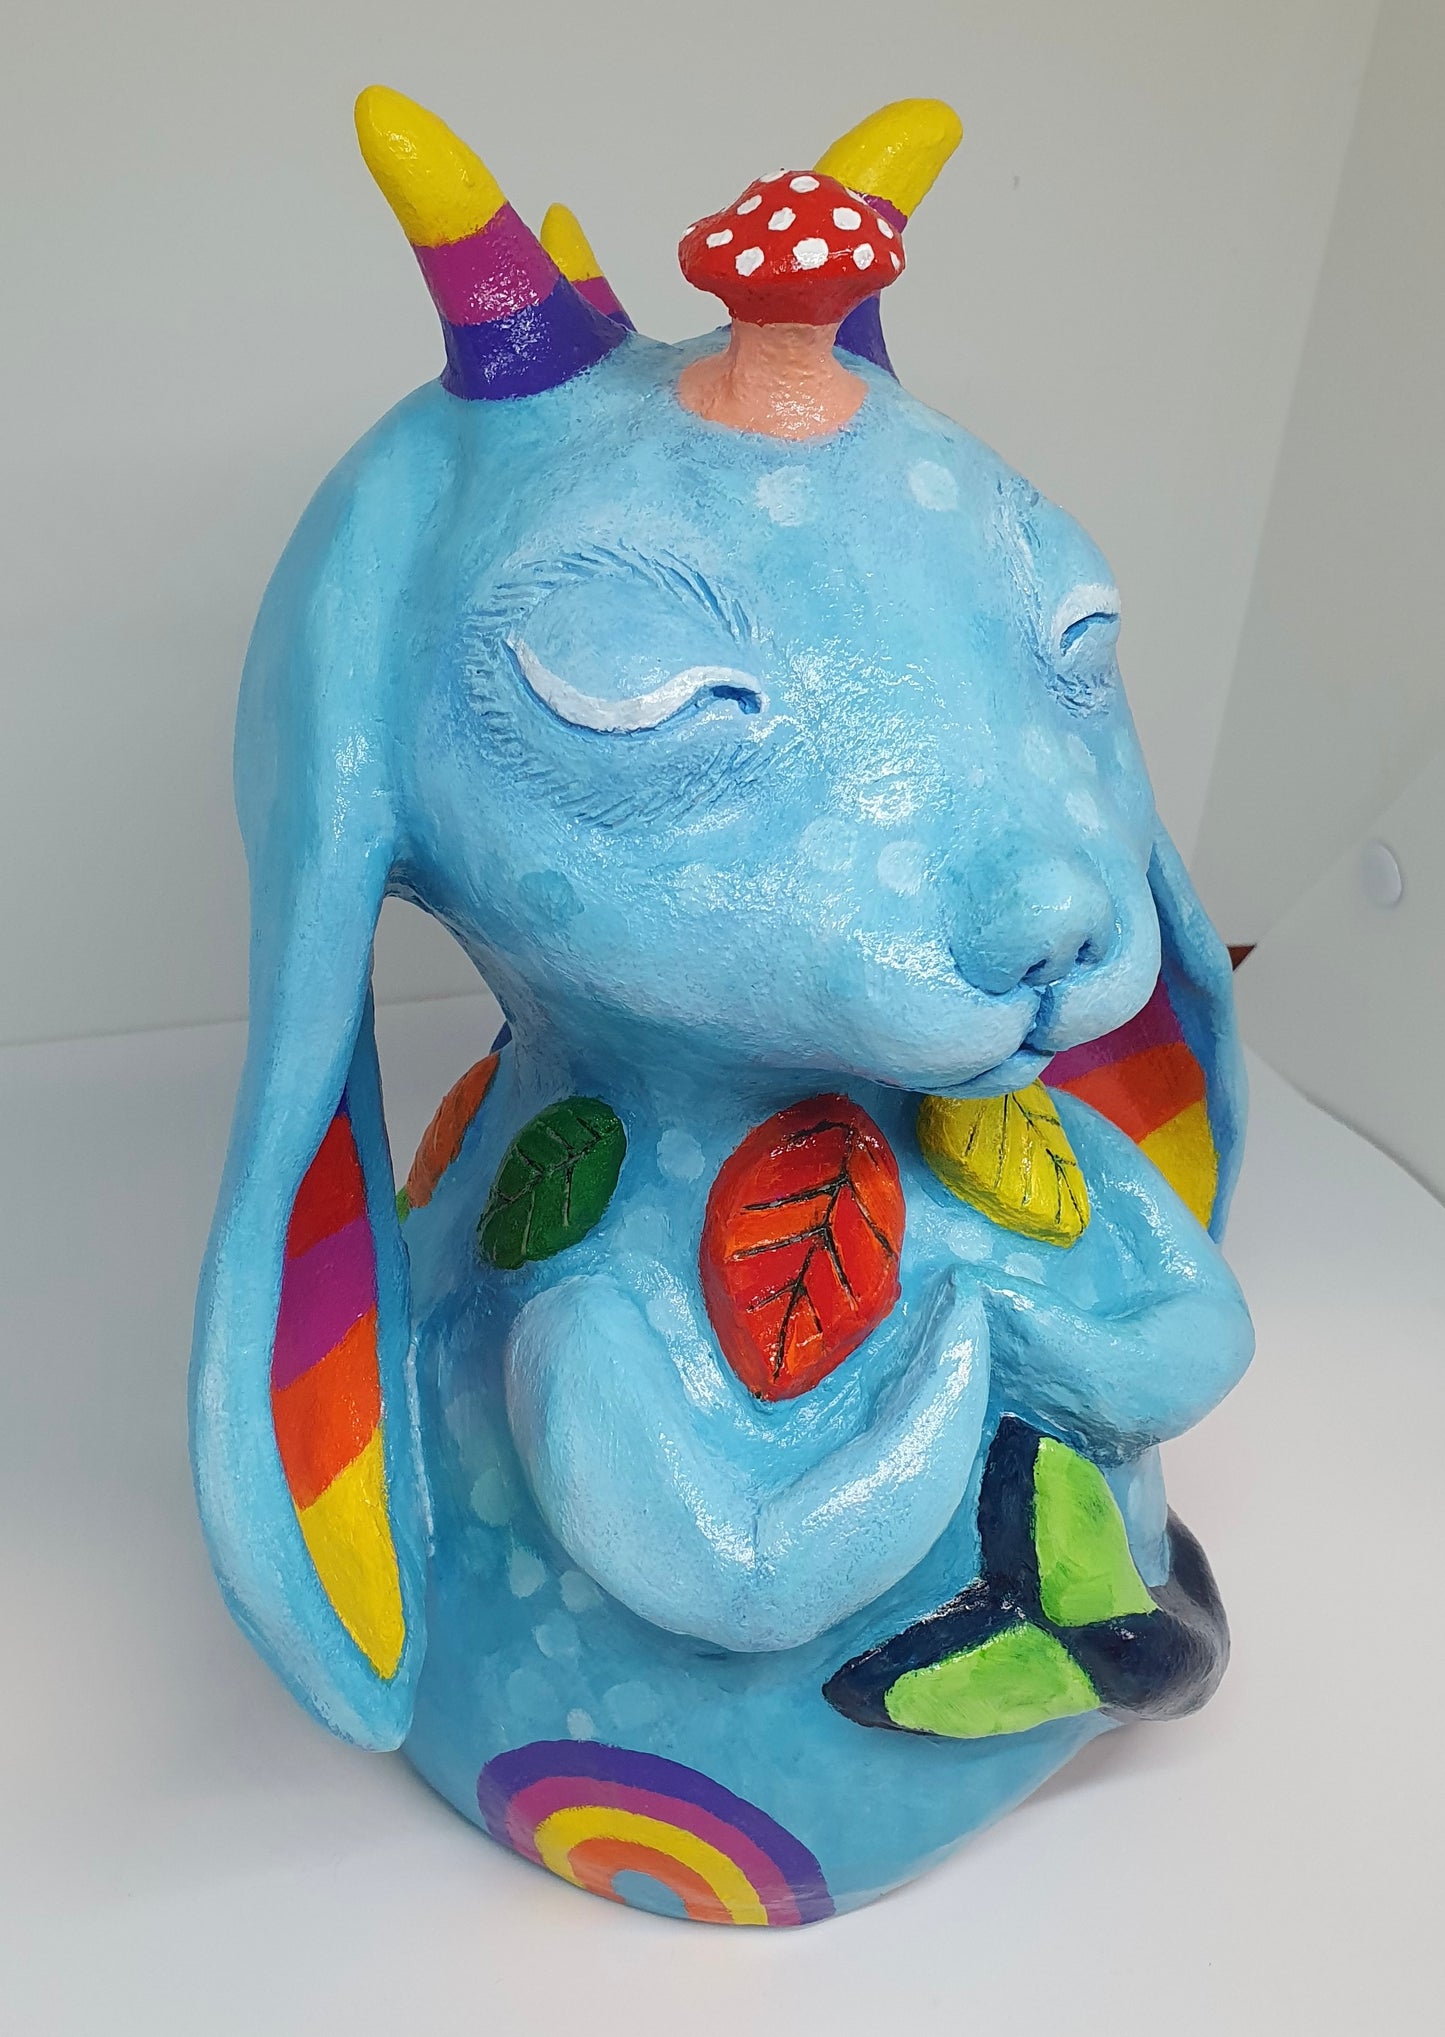 Iris of the Rainbows - ceramic sculpture